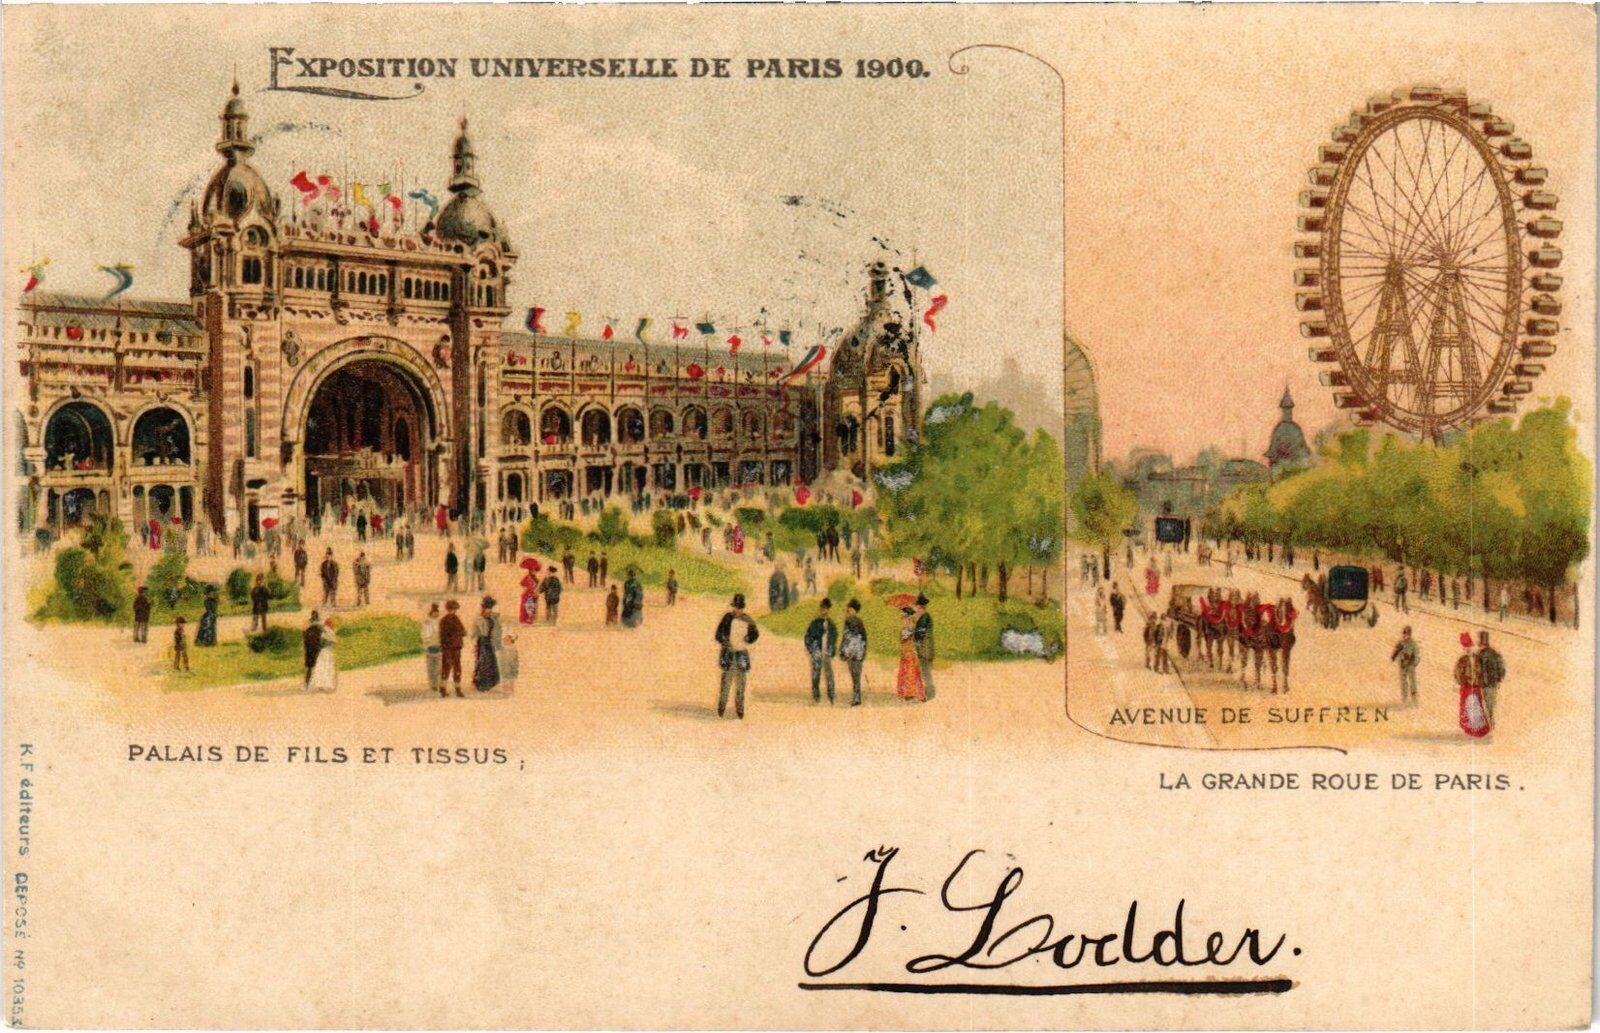 CPA EXPO 1900 Paris (1390774)